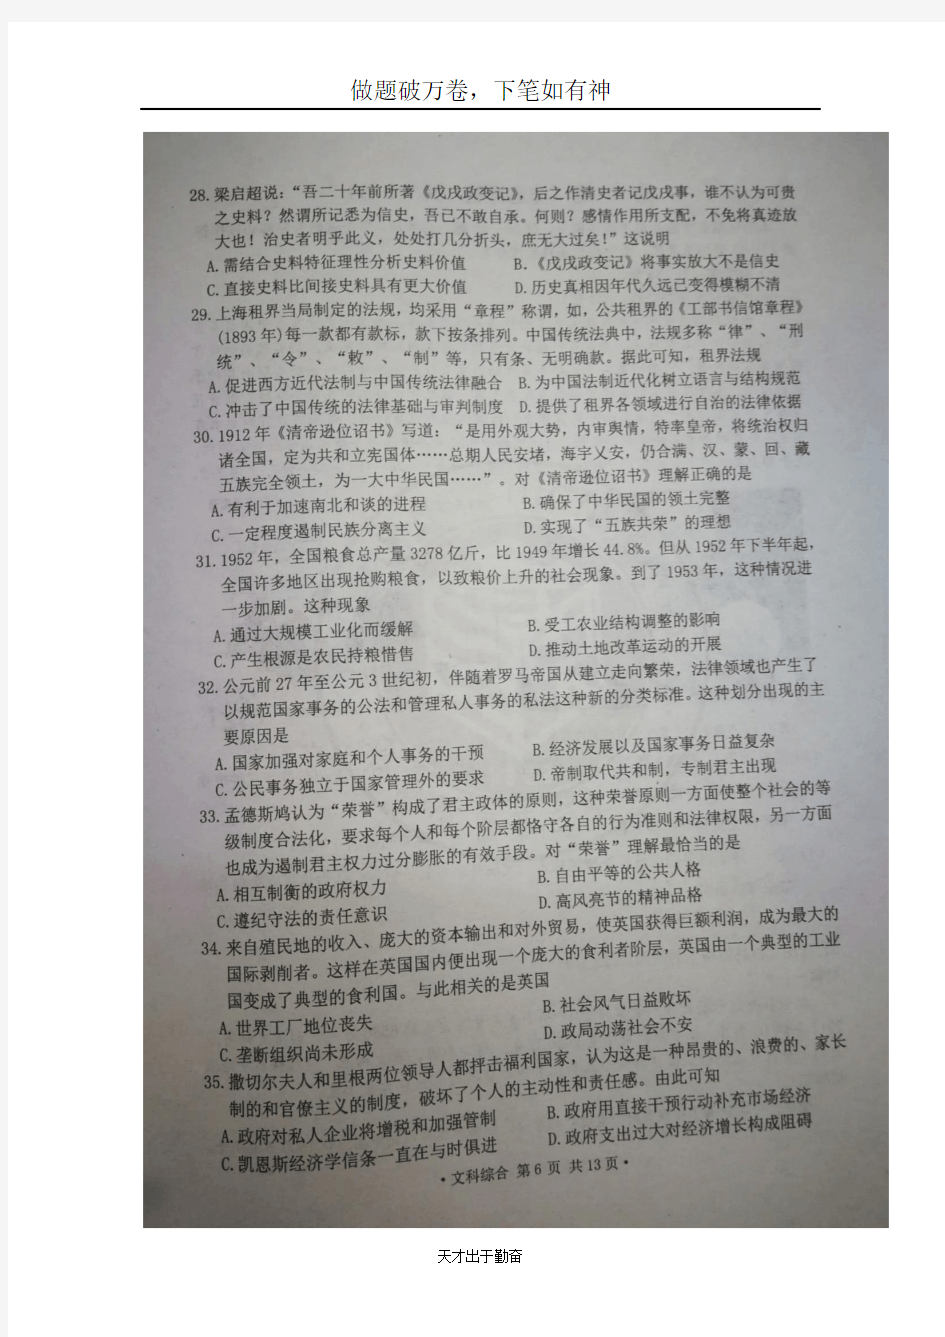 黑龙江省哈尔滨市第三中学校2018届高三文综历史部分二模考试试题扫描版-含答案 师生通用